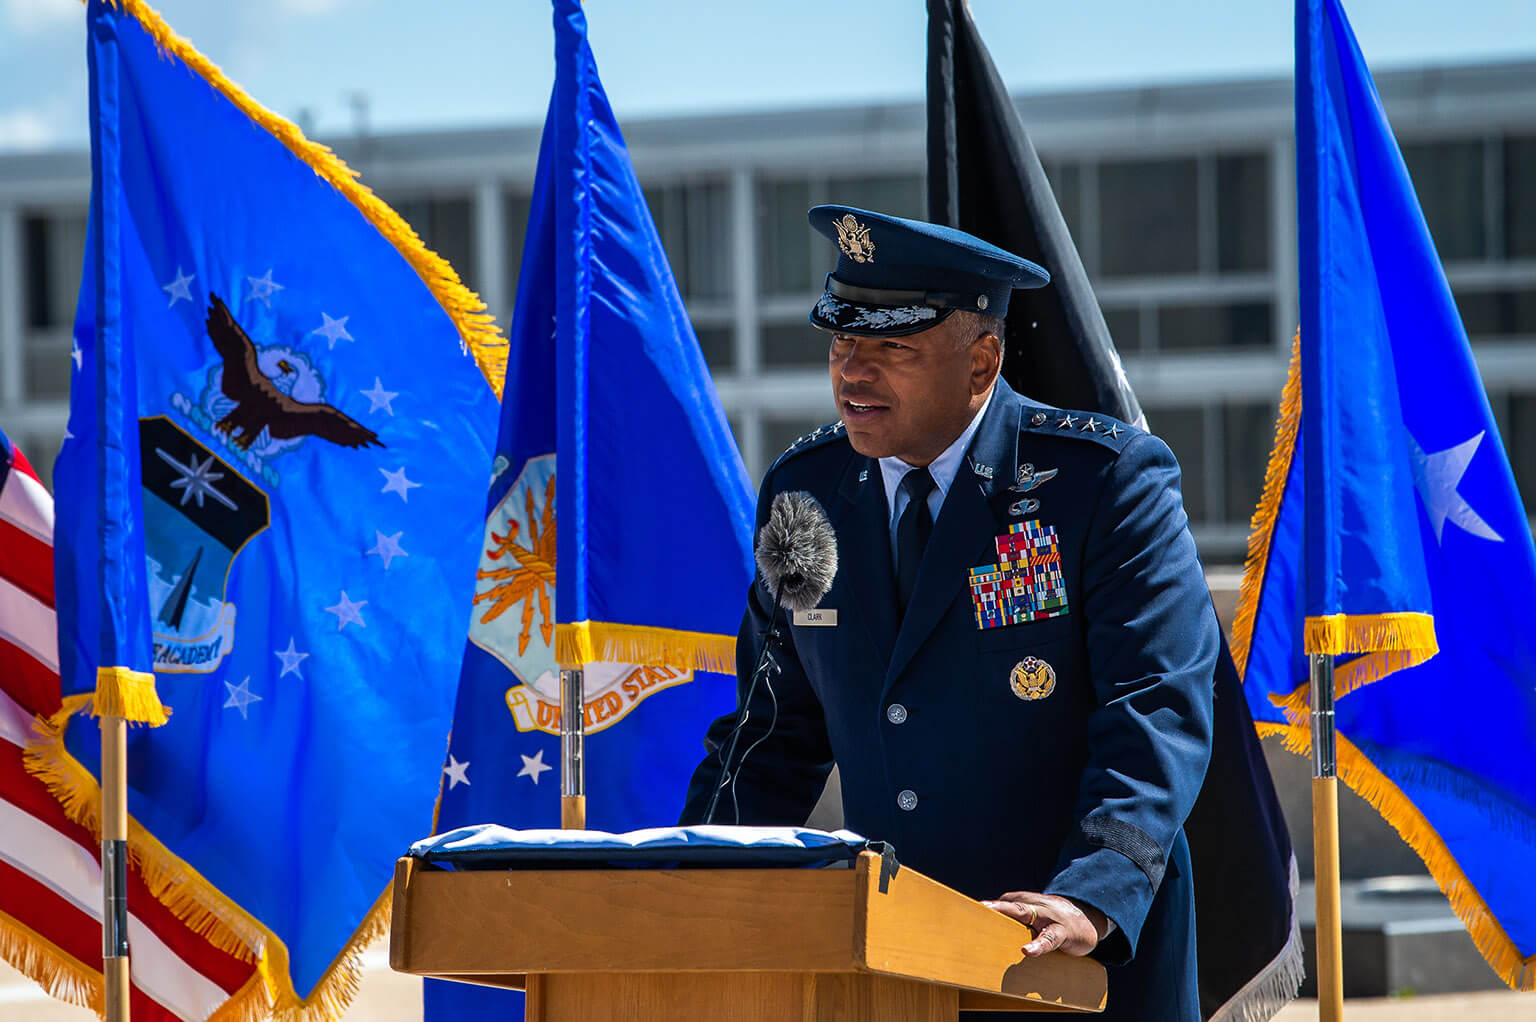 Lt Gen Clark speaking at Aircrew 03 sculpture dedication